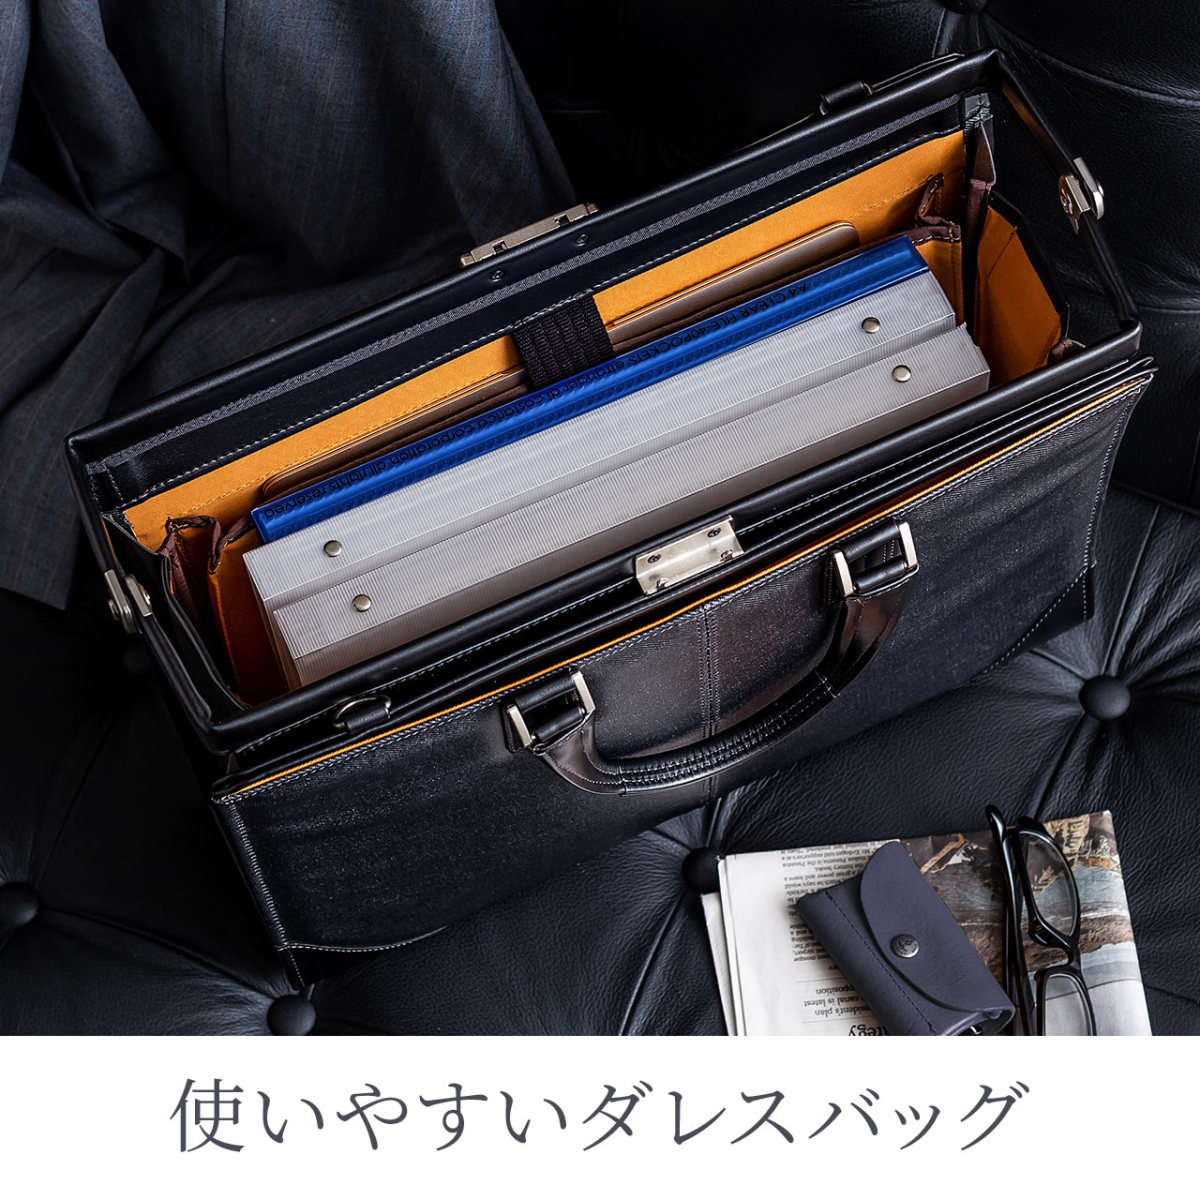 ダレスバッグ メンズ ビジネスバッグ 豊岡鞄 日本製 本革 A4 自立 簡易防水 撥水 ショルダー 鍵付 40代 50代 大容量 ビジネスバック  200-BAG145